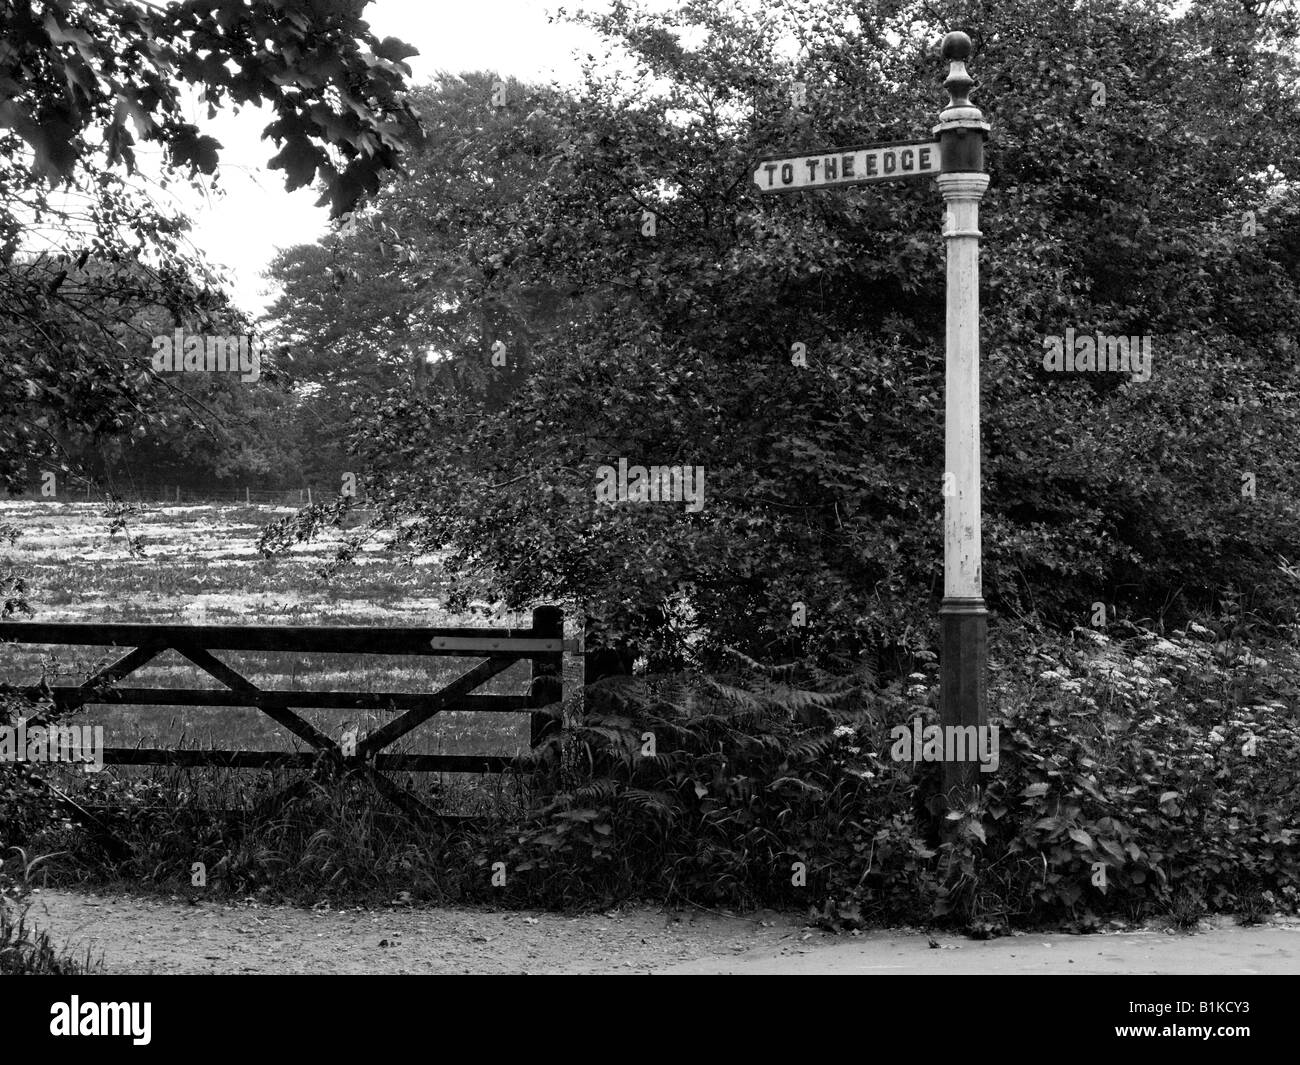 Ferro vecchio segno posto dicendo a bordo. A Alderley Edge, nel Cheshire, vicino Manchester. Fotografia in bianco e nero. Monocromatico. Foto Stock